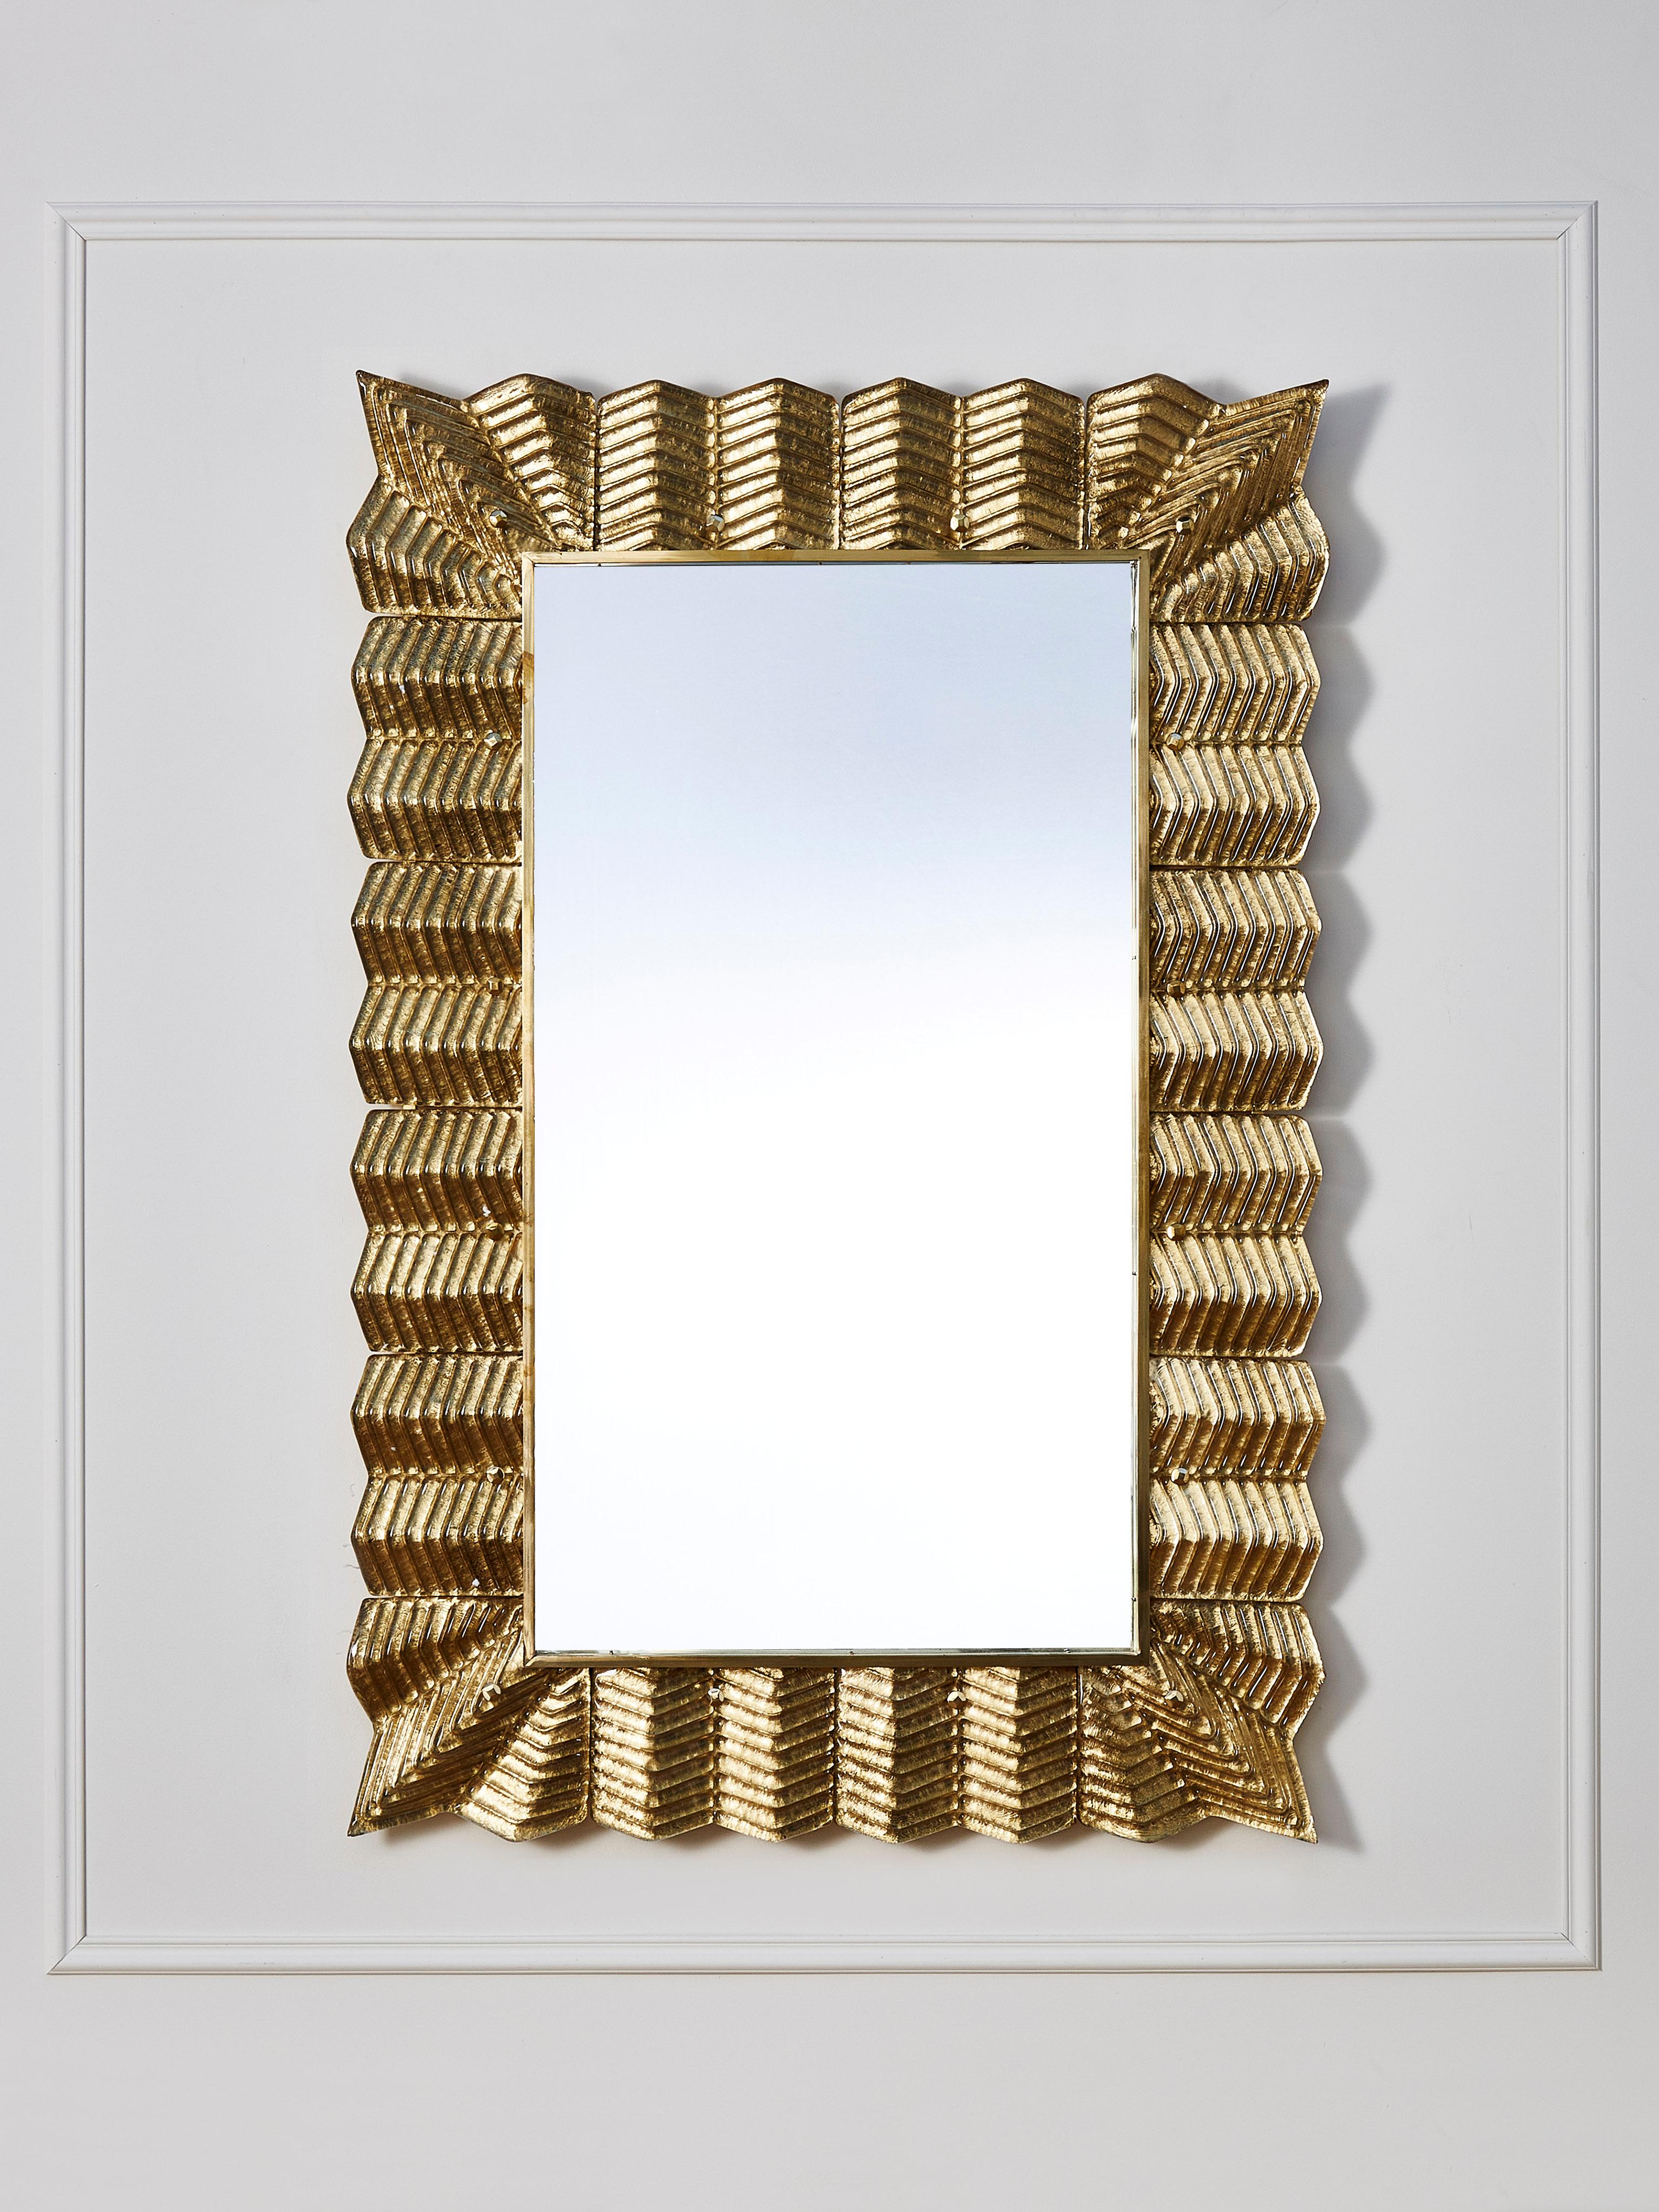 Spiegel mit einem Rahmen aus Messing und plastischem Murano-Glas, vergoldet mit Blattgold. 
Gestaltung durch das Studio Glustin.
  